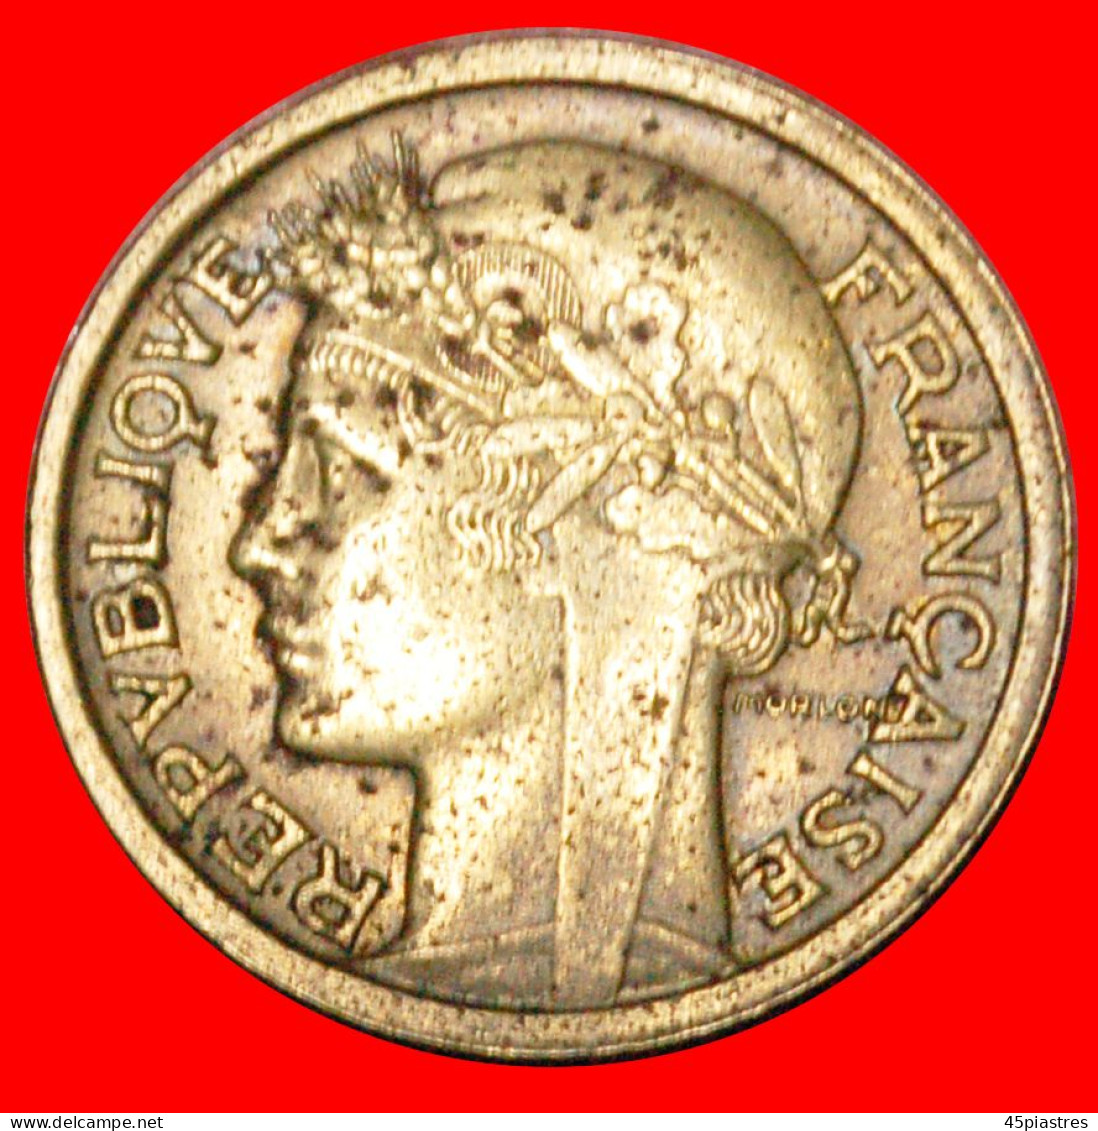 1 Euro (2nd type) - San Marino – Numista